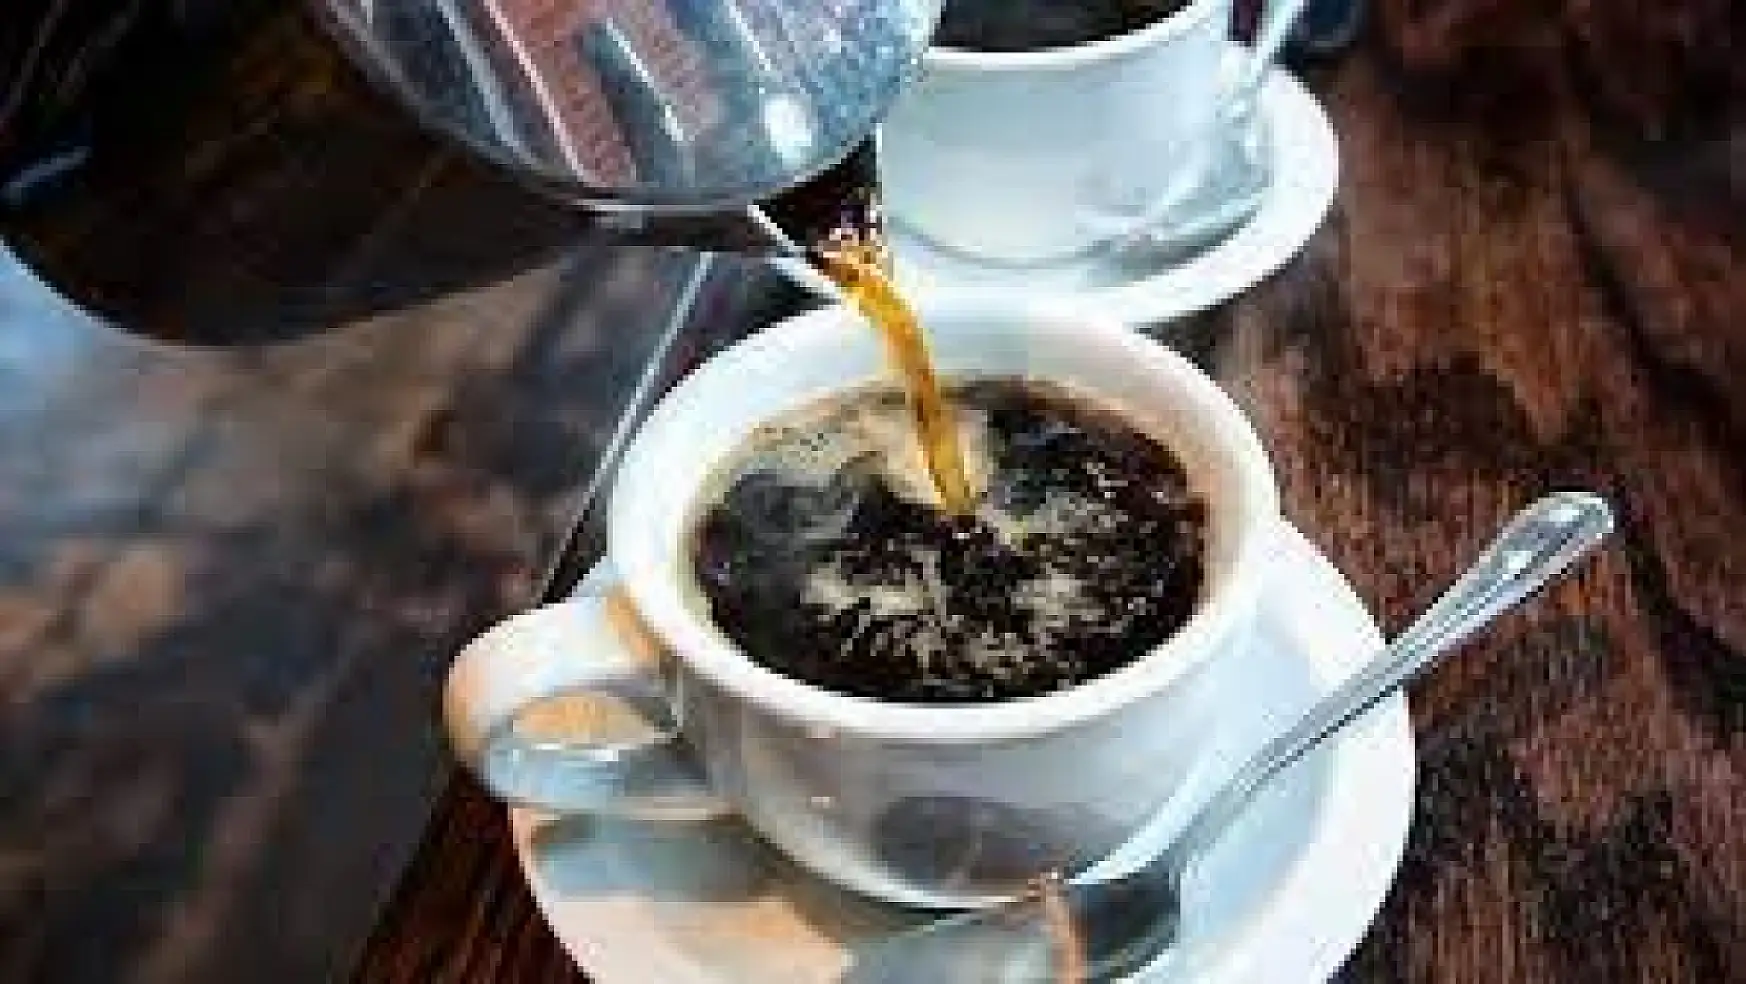 Kahve içmenin sağlığa faydası olduğunu biliyor muydunuz? İşte kahvenin faydaları...